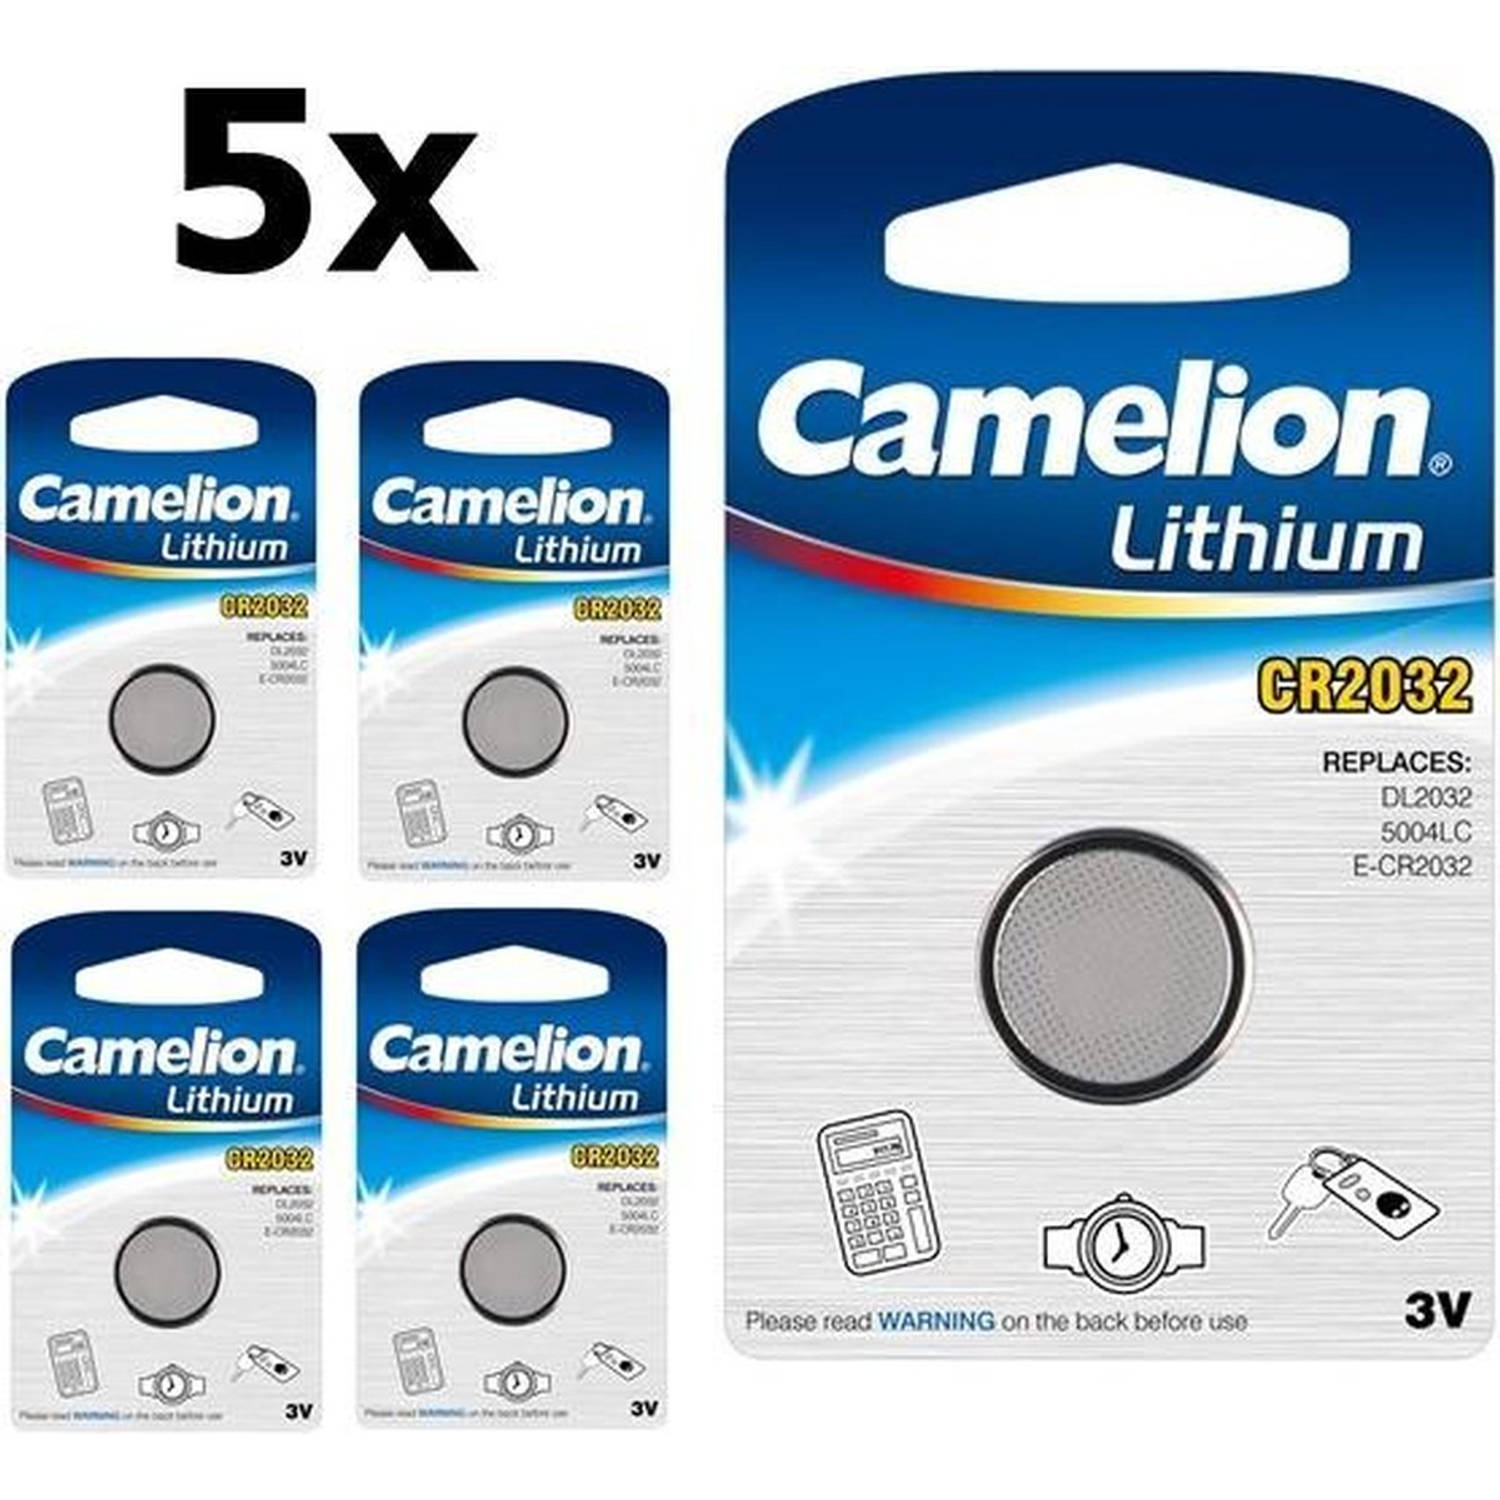 5 Stuks Camelion CR2032 3V Lithium batterij